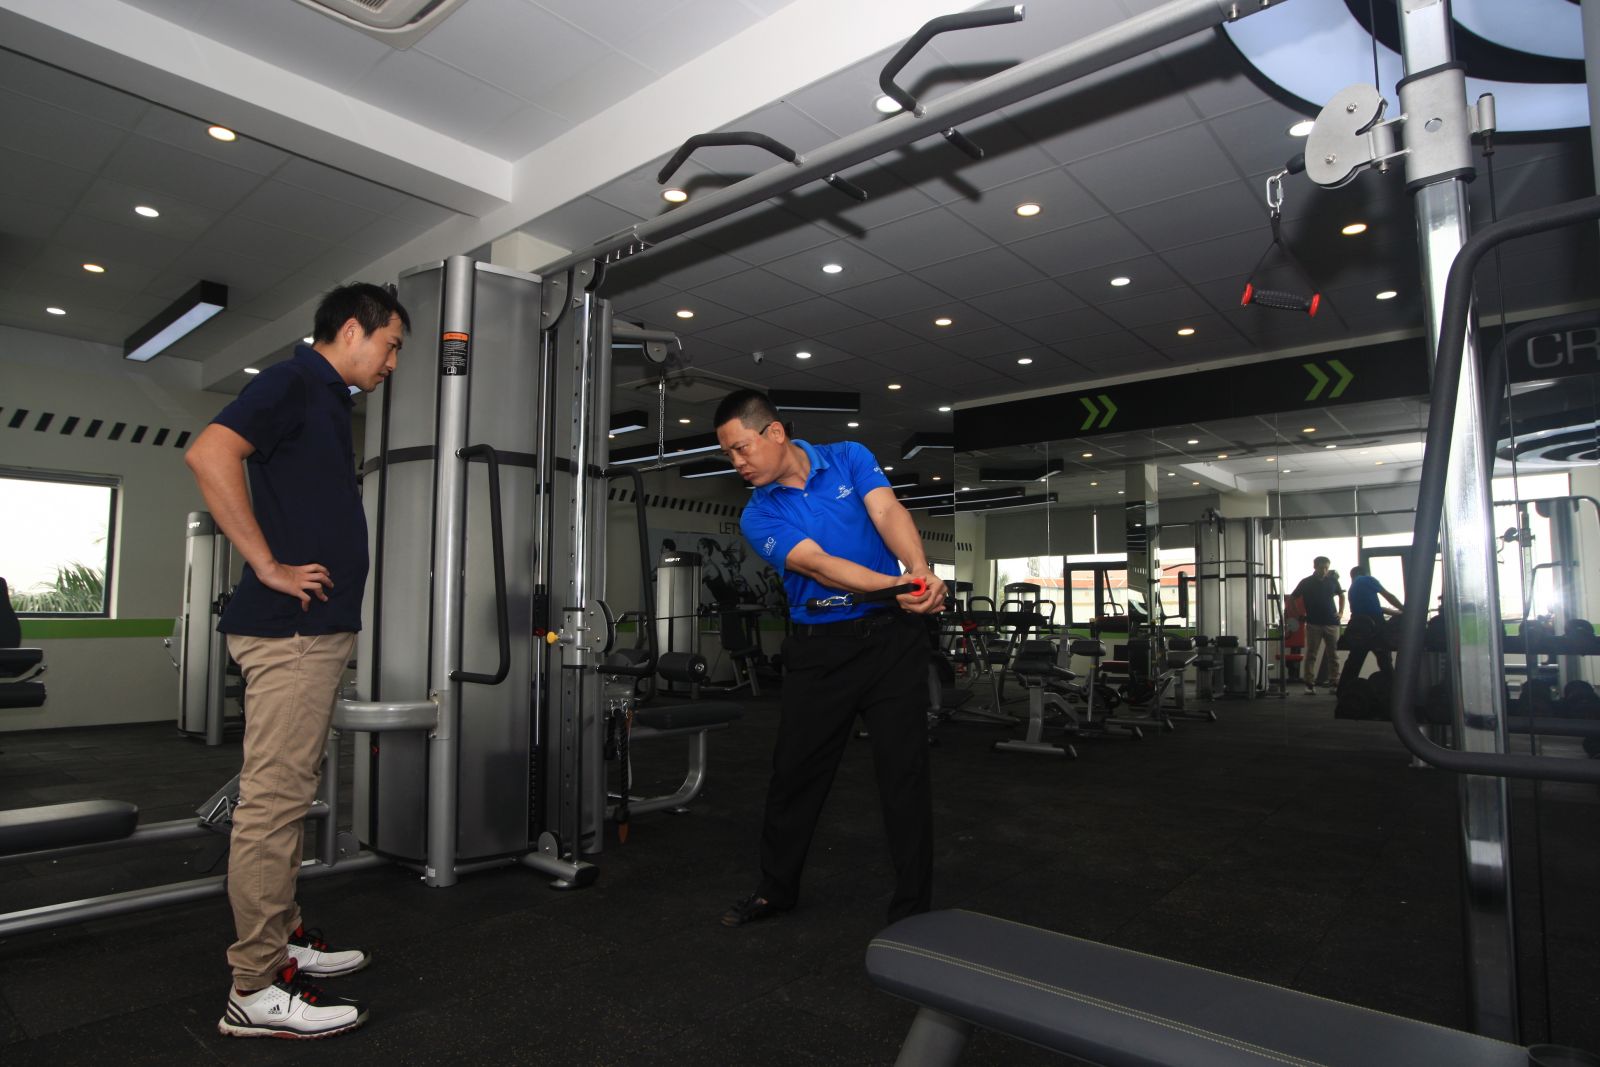 Hệ thống phòng tập gym tiêu chuẩn 3 sao Dao Sen Fitness tọa lạc trên tầng 4 tòa nhà Dao Sen golf với hệ thống máy móc nhập khẩu 